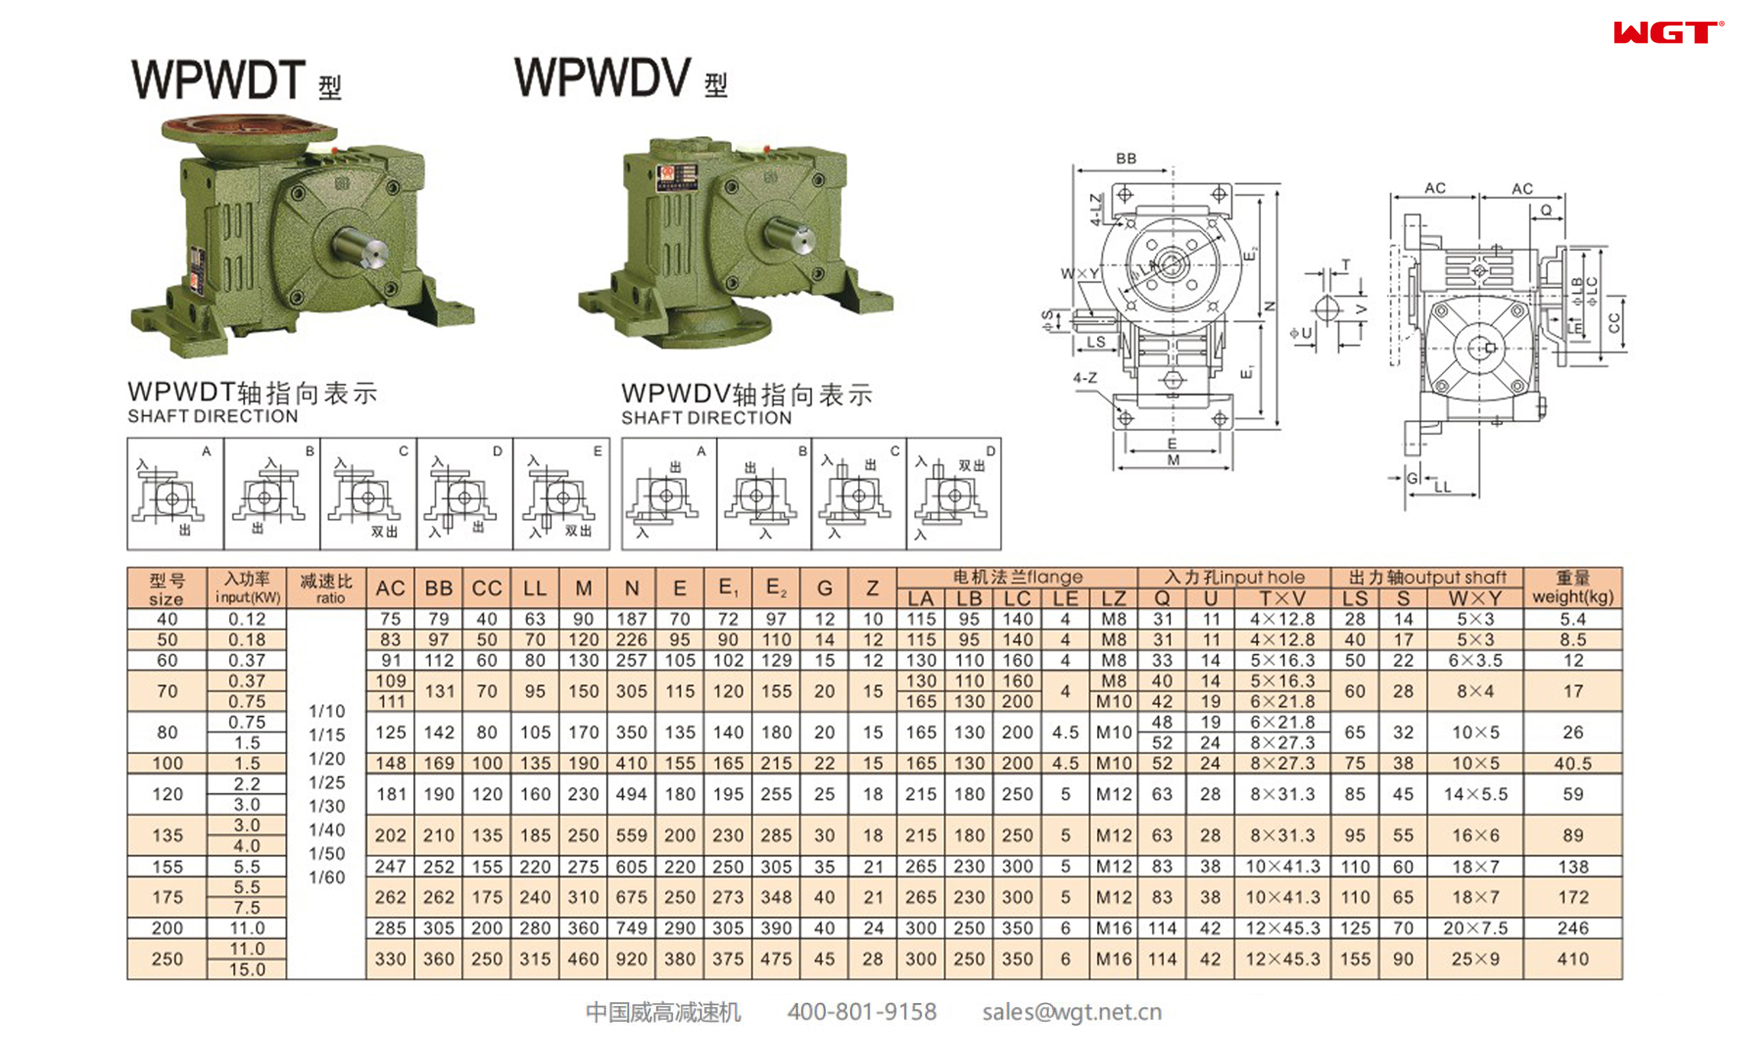 WPWDT WPWDV100 Worm Gear Reducer UNIVERSAL SPEED REDUCER